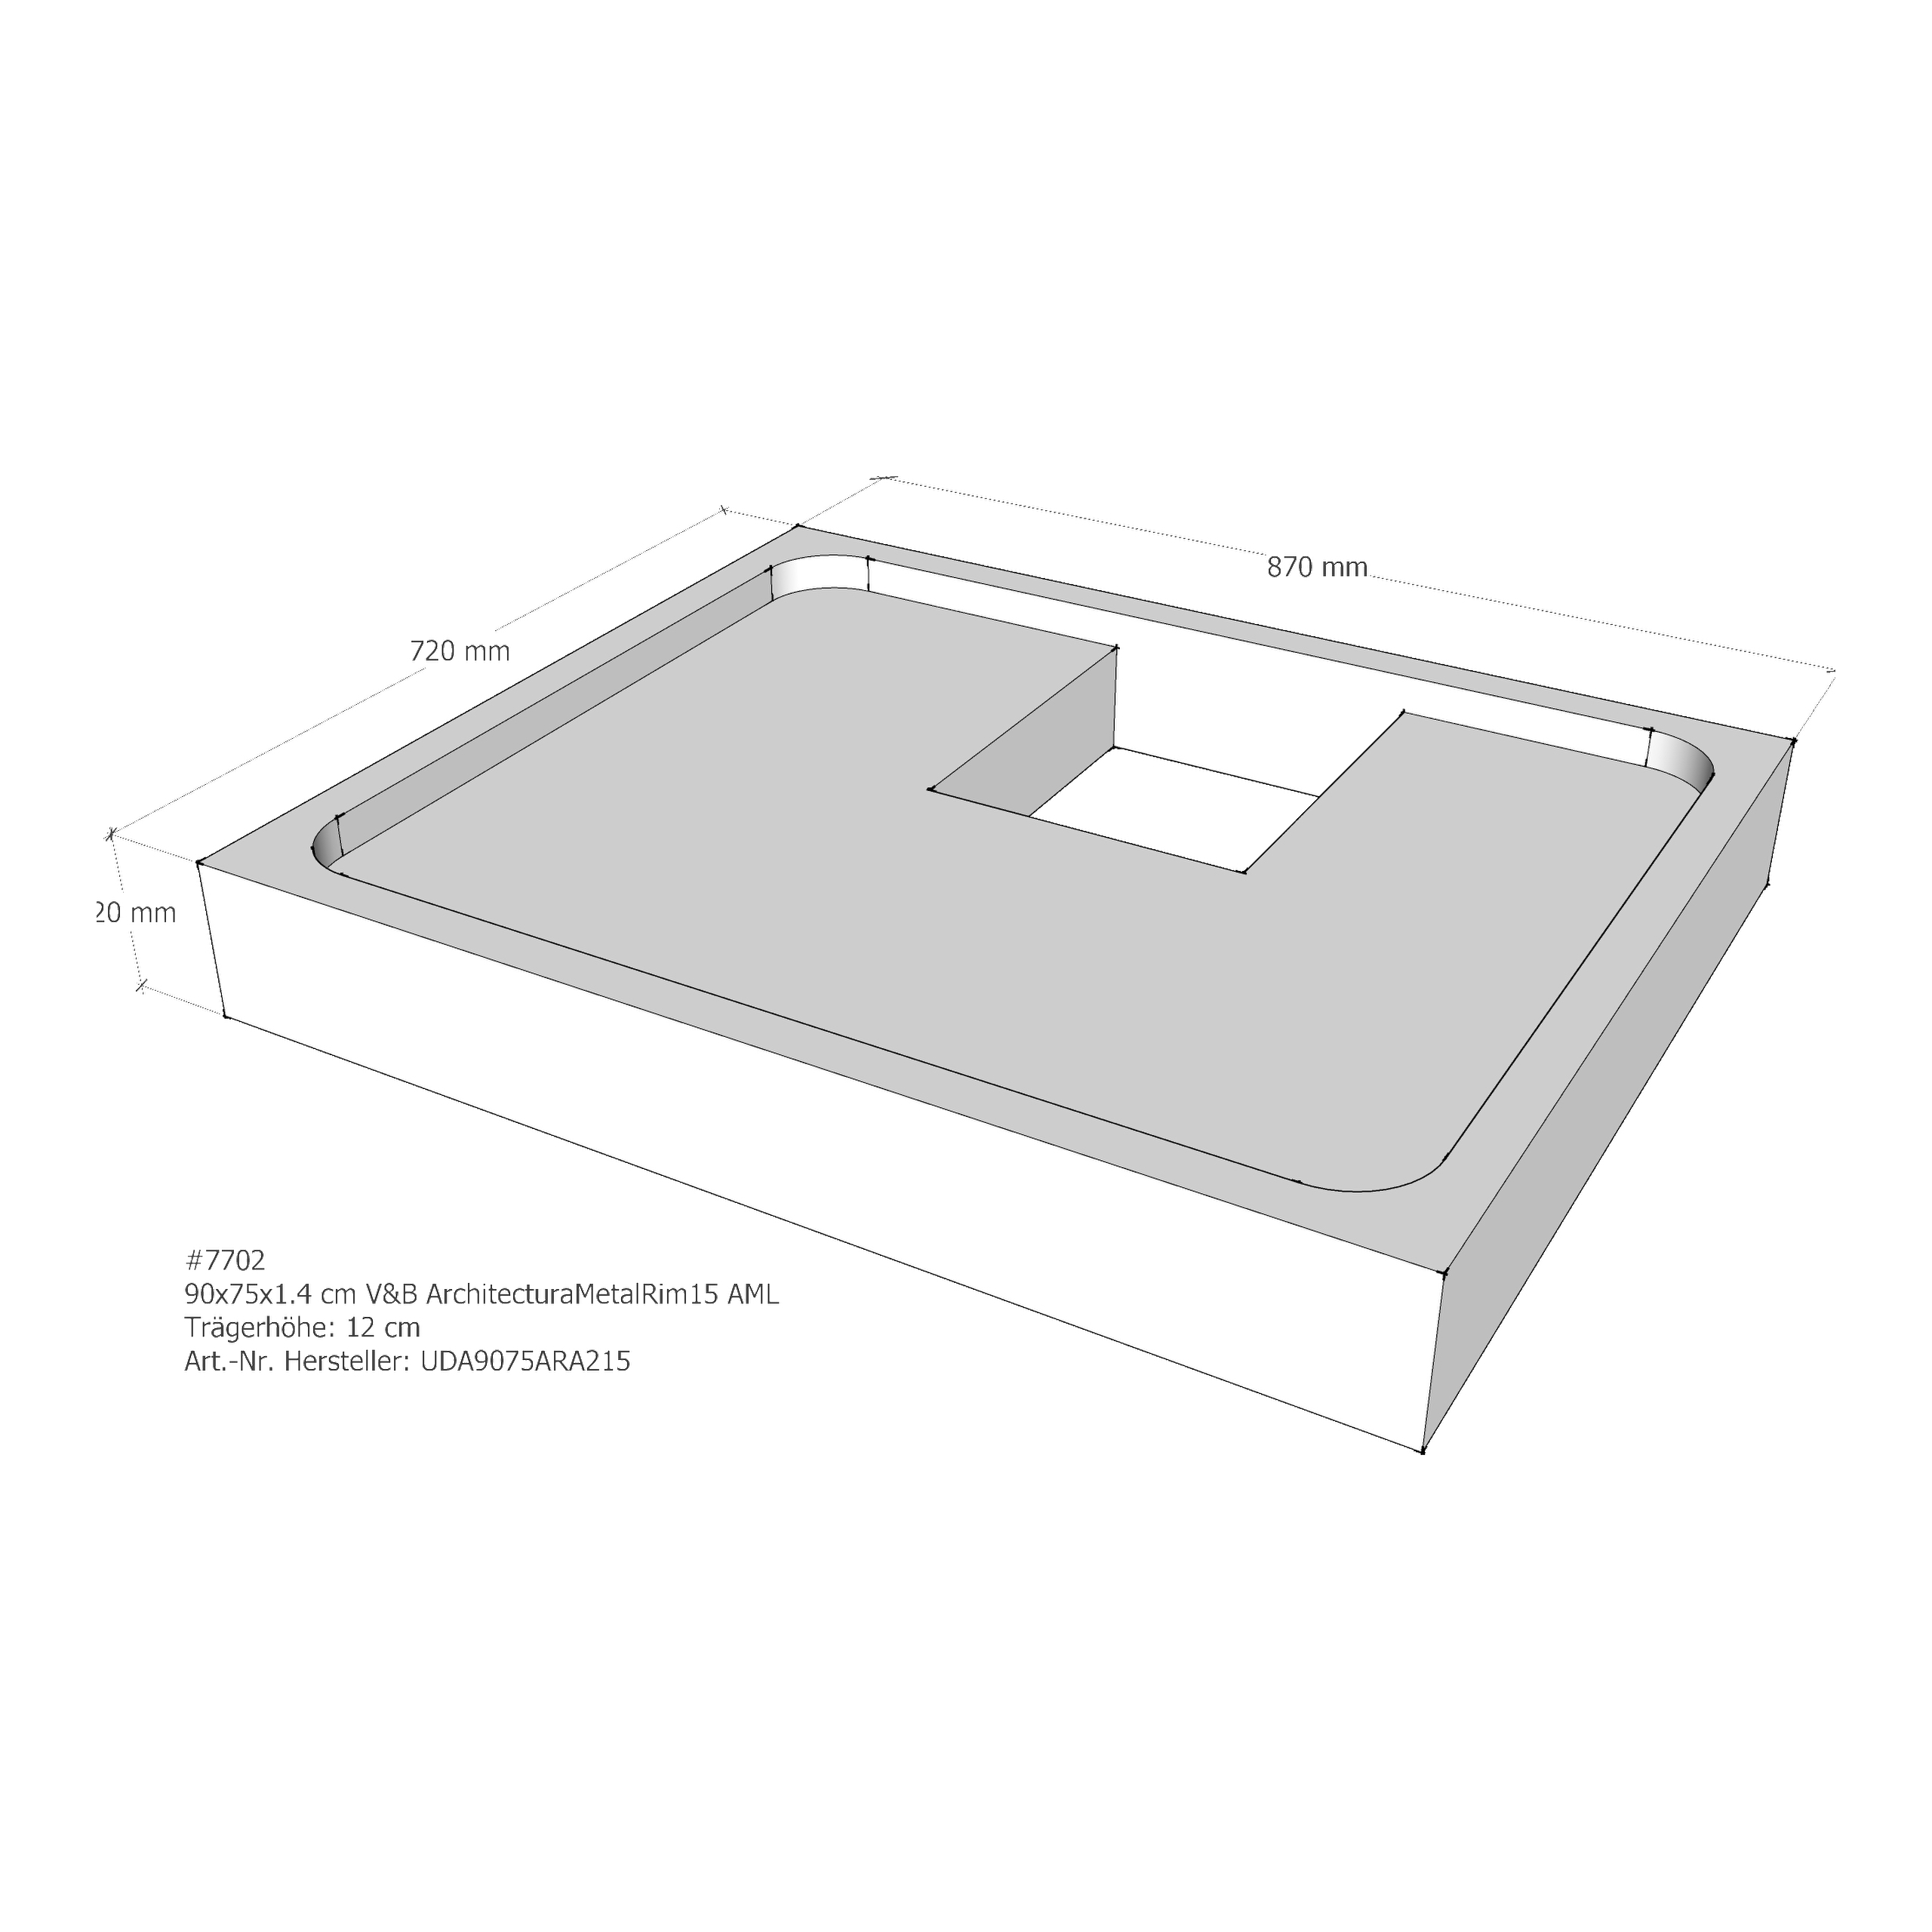 Duschwannenträger für Villeroy & Boch Architectura MetalRim 90 × 75 × 1,4 cm